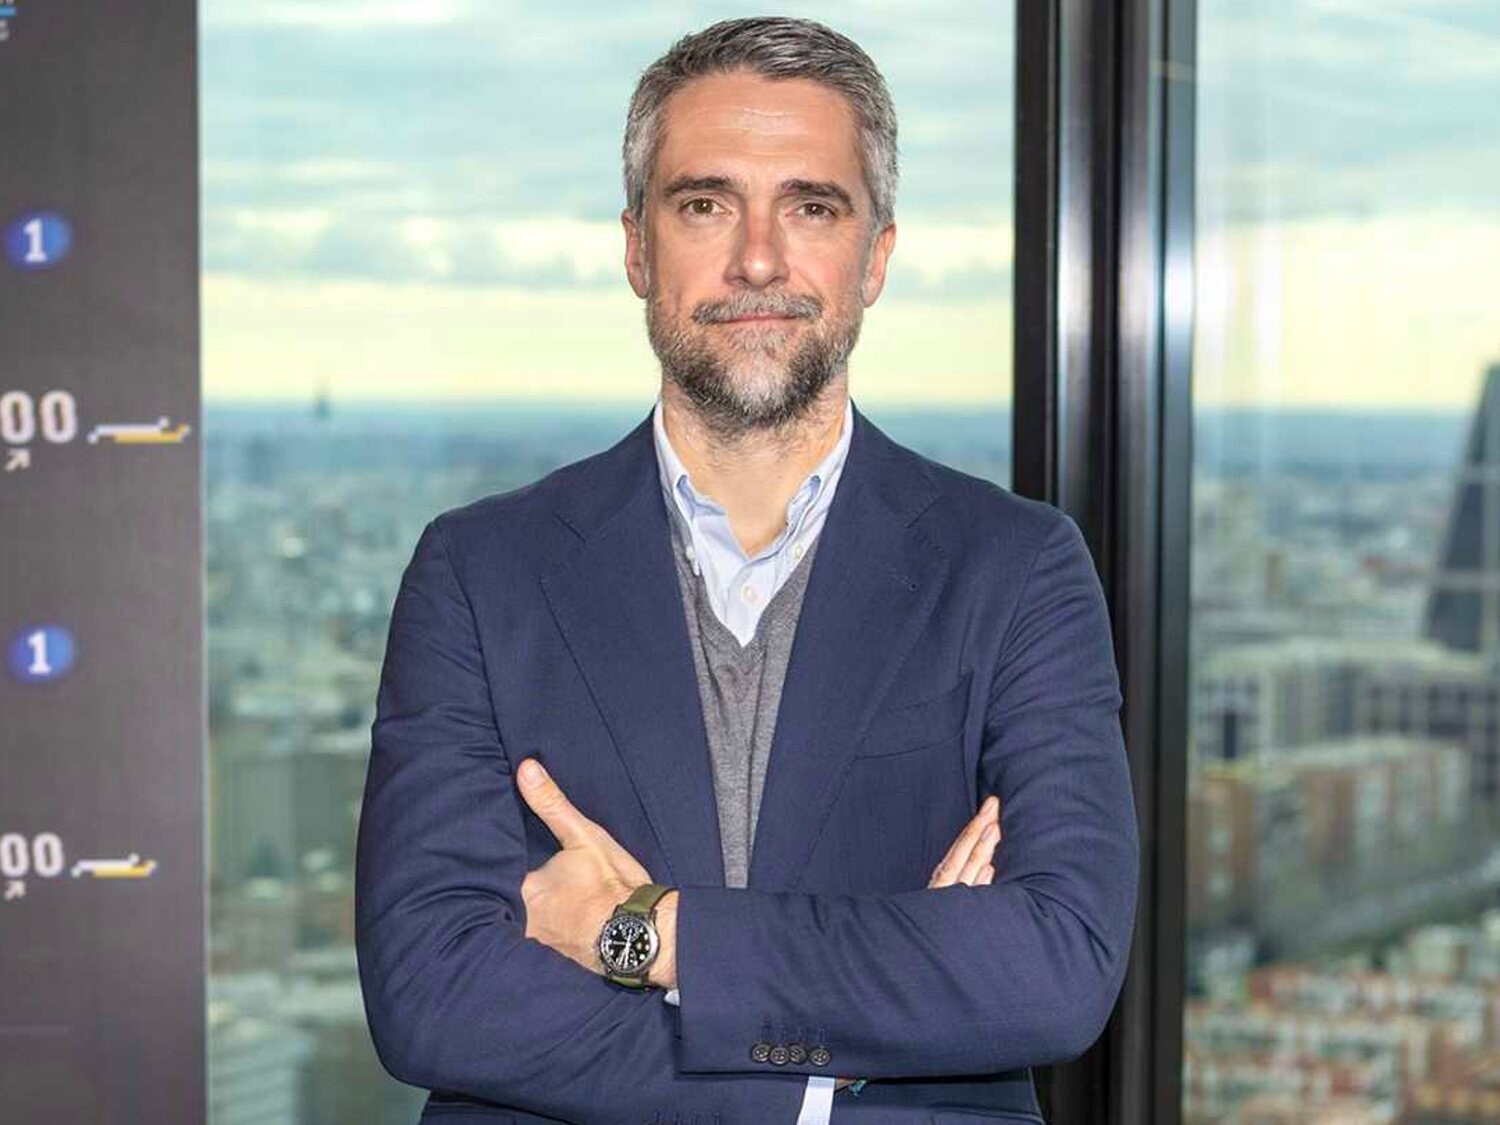 Lo que cobrará Carlos Franganillo en Mediaset tras dejar TVE